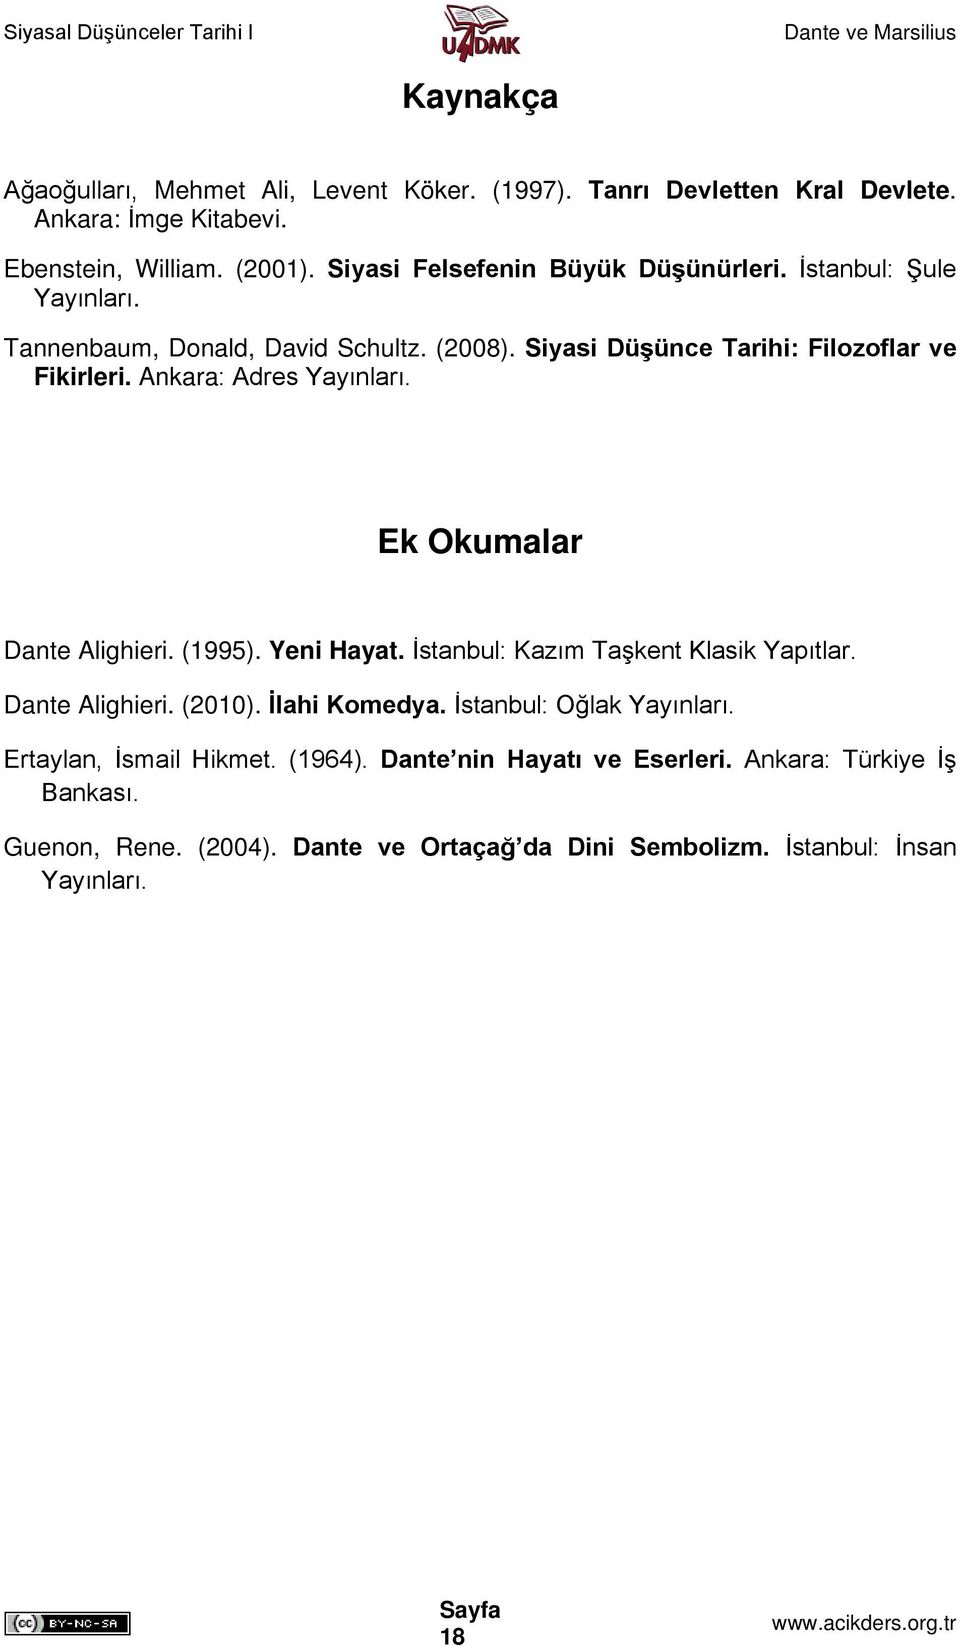 Ankara: Adres Yayınları. Ek Okumalar Dante Alighieri. (1995). Yeni Hayat. İstanbul: Kazım Taşkent Klasik Yapıtlar. Dante Alighieri. (2010). İlahi Komedya.